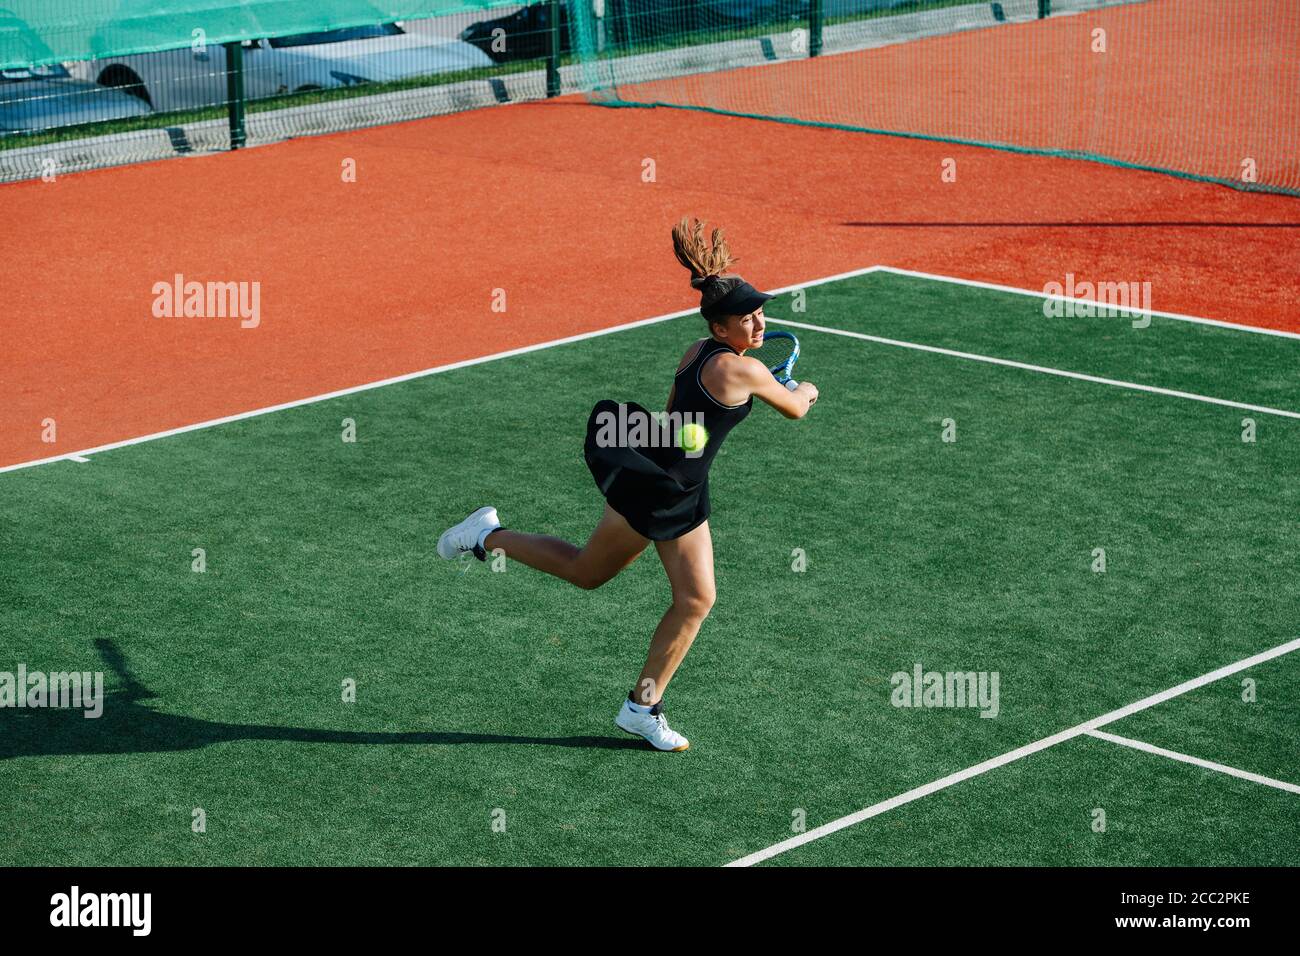 Une adolescente qui ne joue pas au tennis sur un nouveau terrain, qui manque sur un ballon rapide Banque D'Images